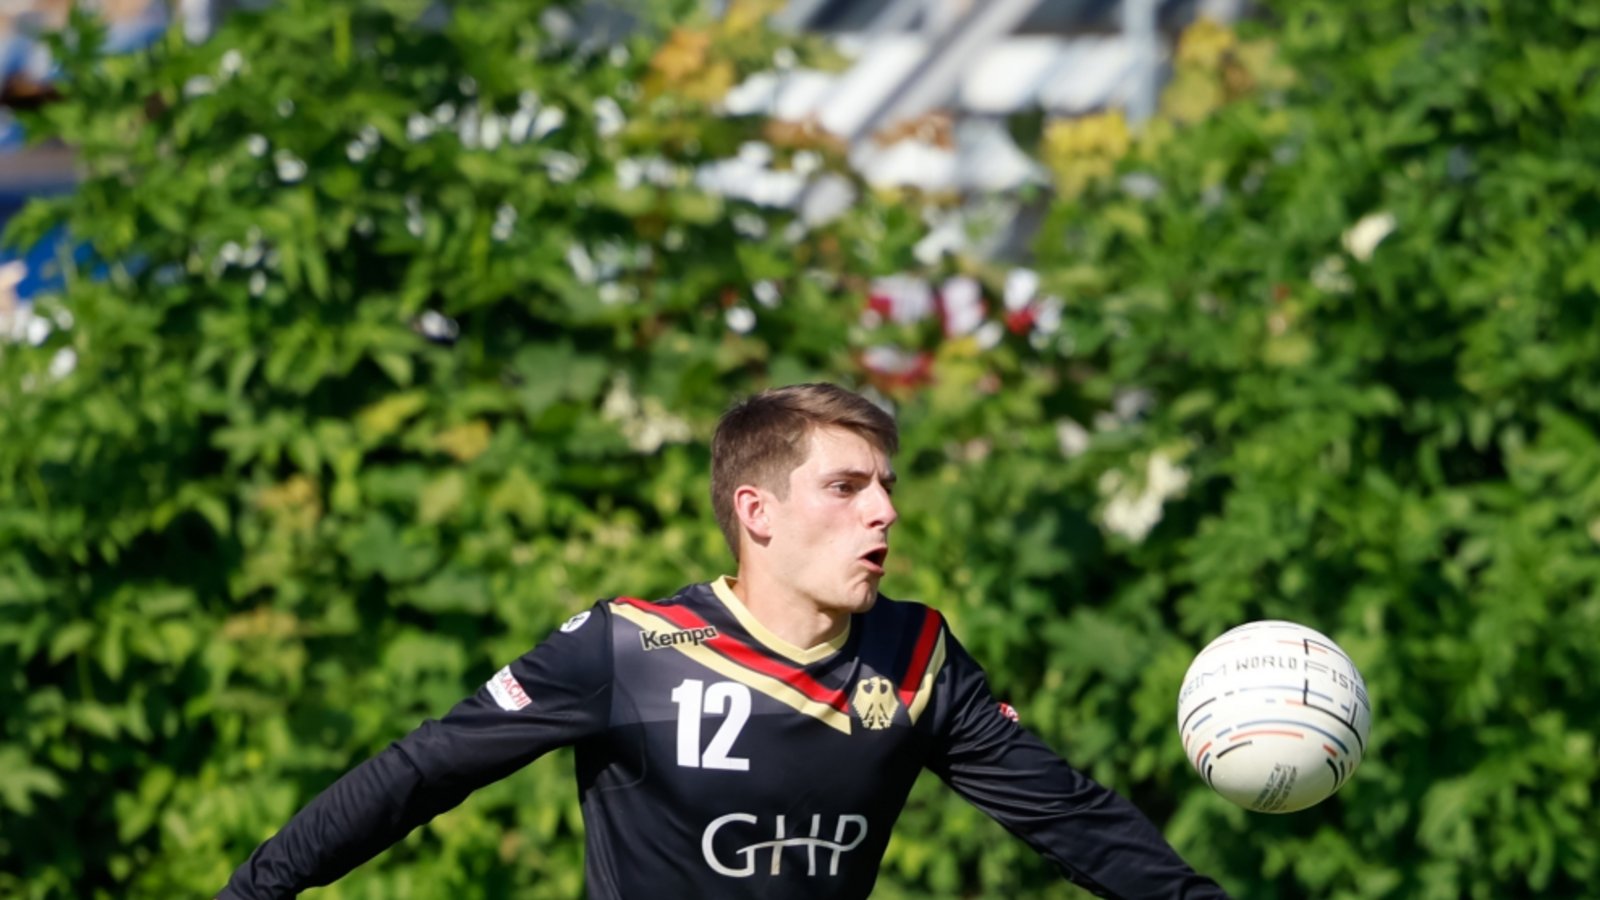 Jakob Kilpper ist der dritte Vaihinger, der im WM-Kader steht. Foto: Faustball Deutschland